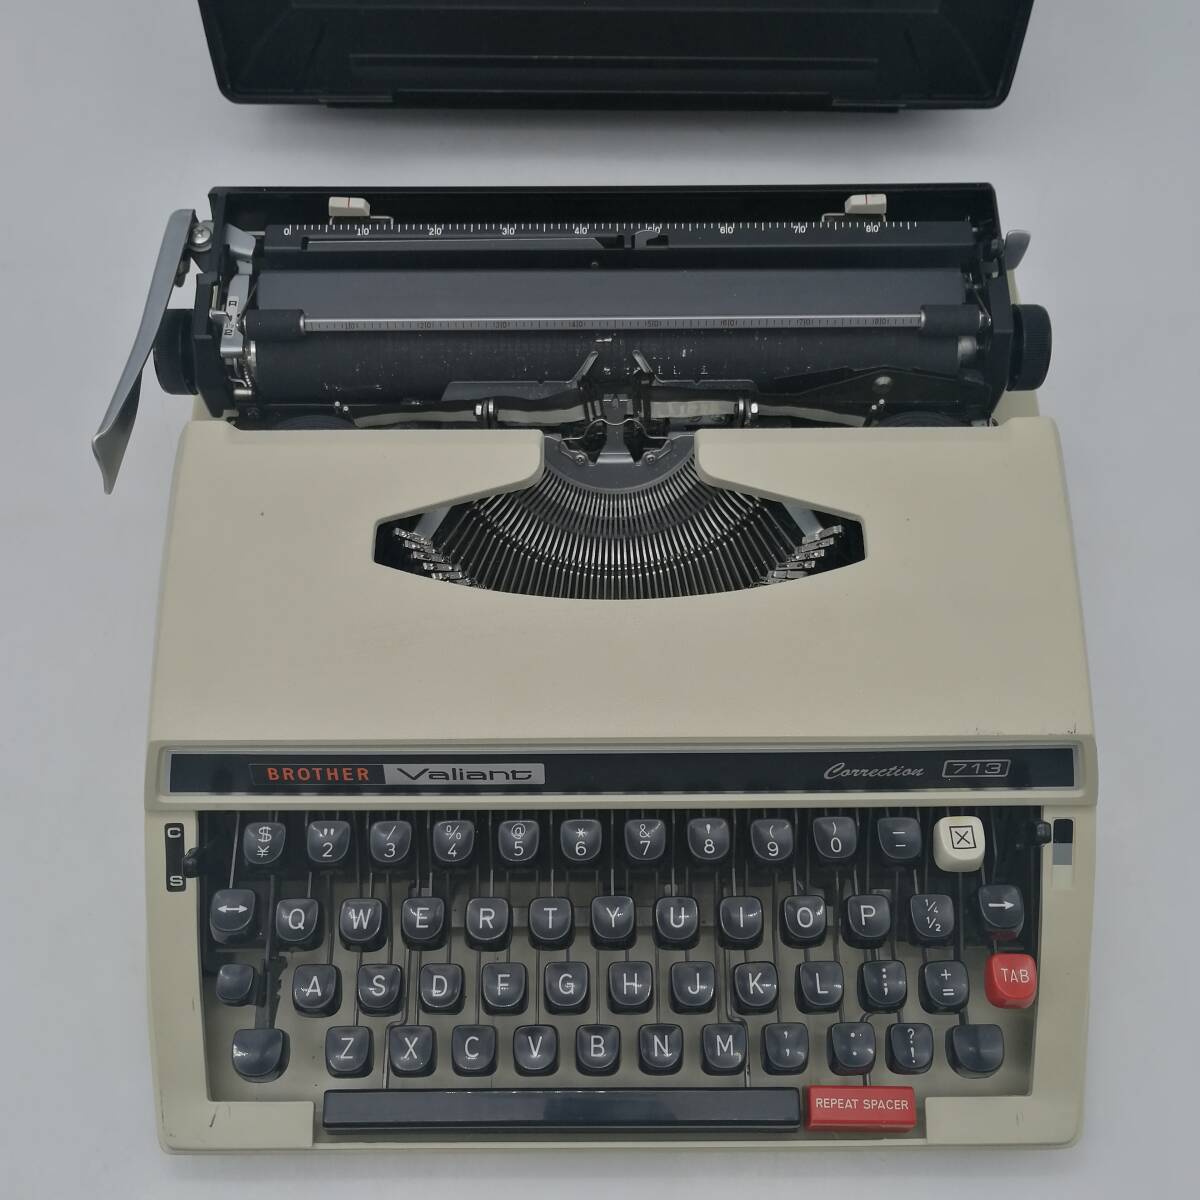 t2726 BROTHER ブラザー Valiant タイプライター コレクション 713 昭和レトロ アンティーク 中古品 現状品 電化製品_画像2